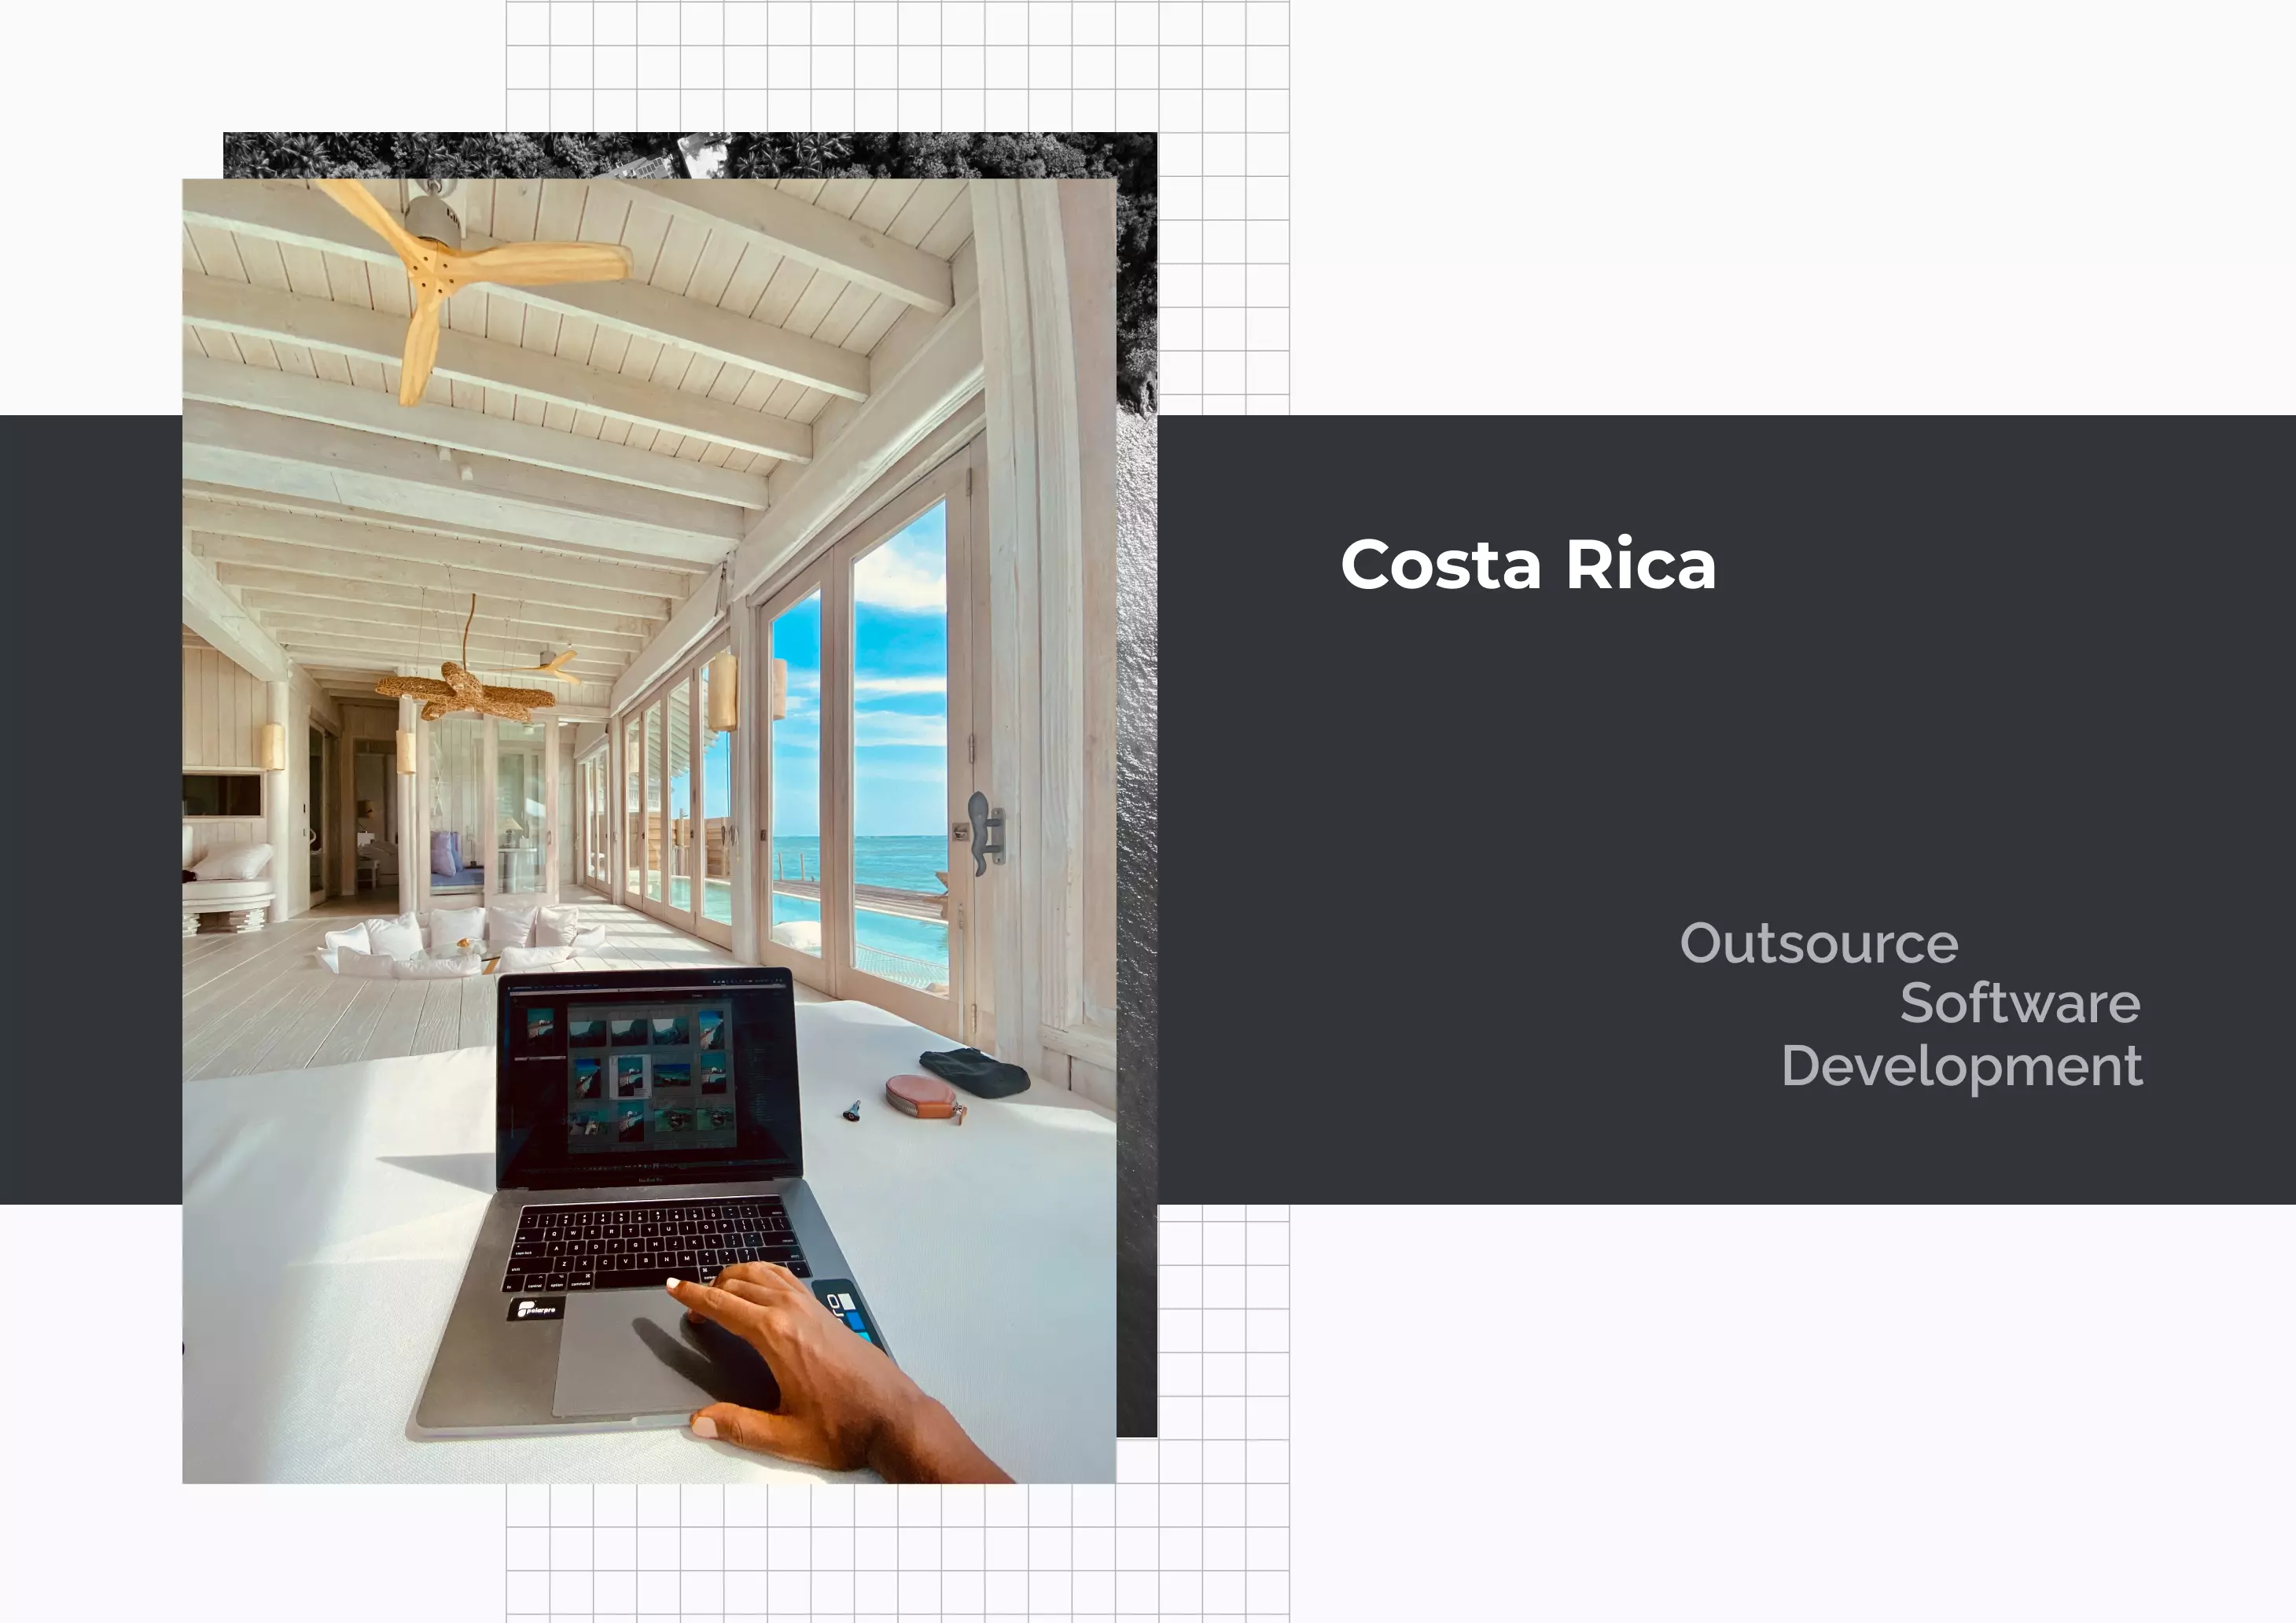 Software Development in Costa Rica